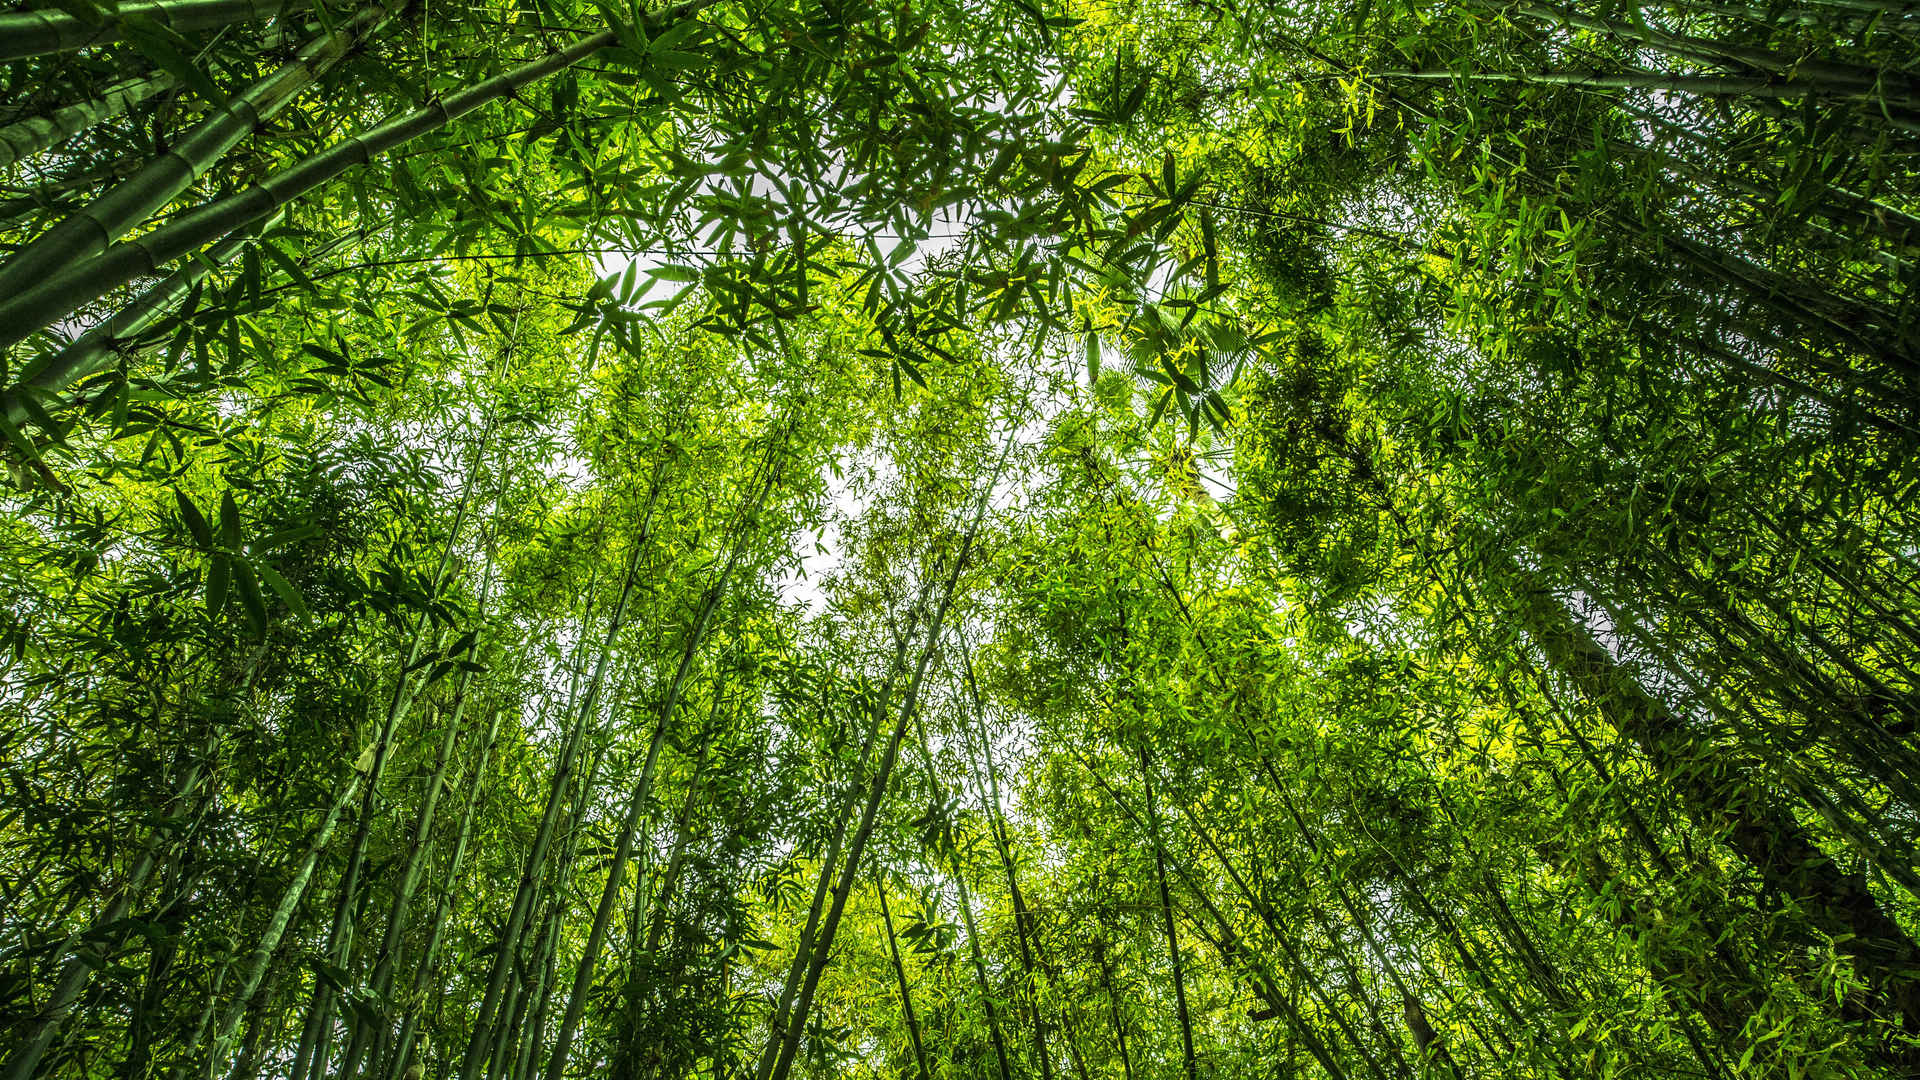 四季常青的竹子护眼壁纸图片